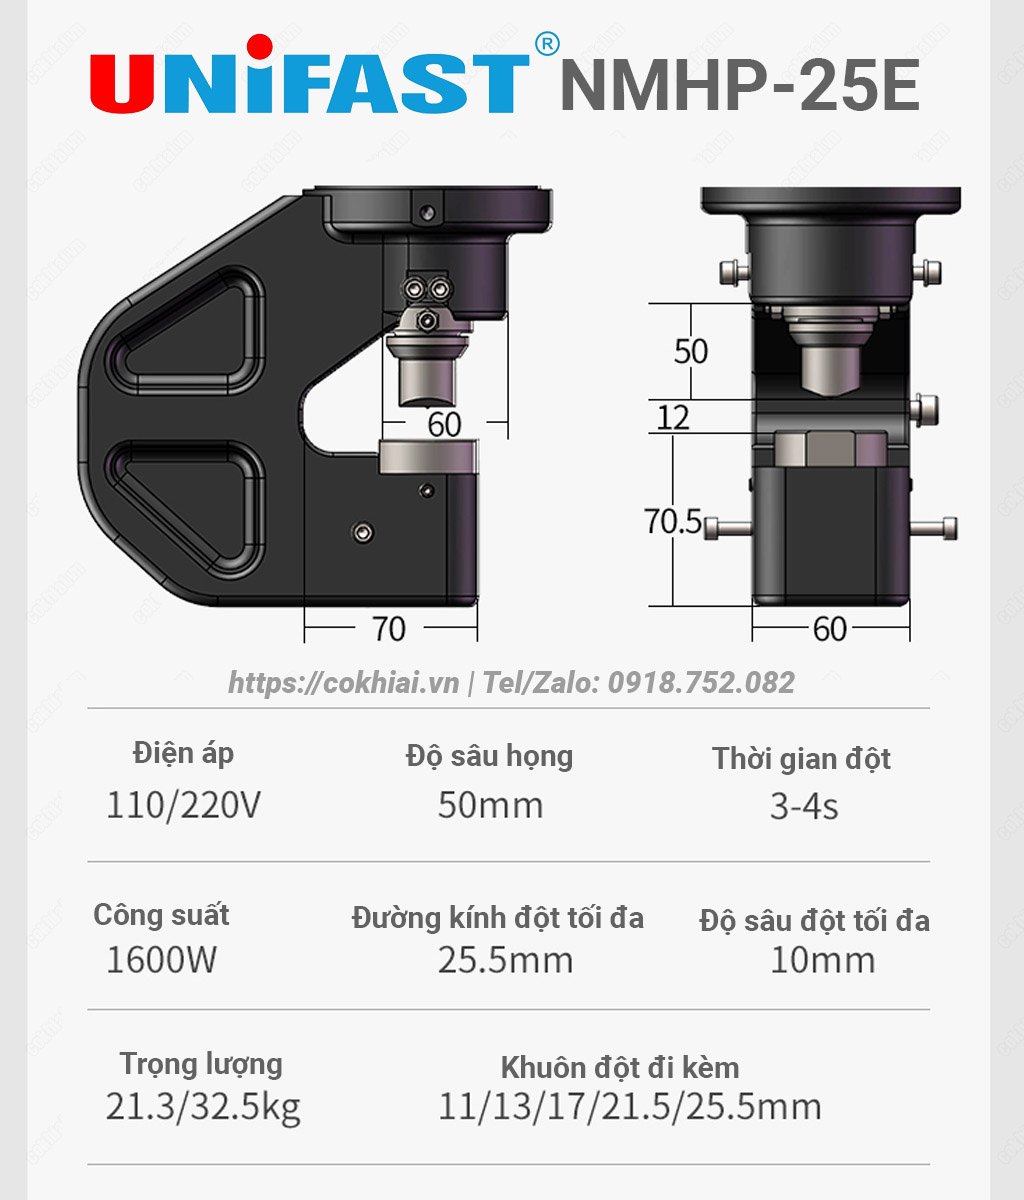 Kích thước họng đột Unifast NMHP-25E